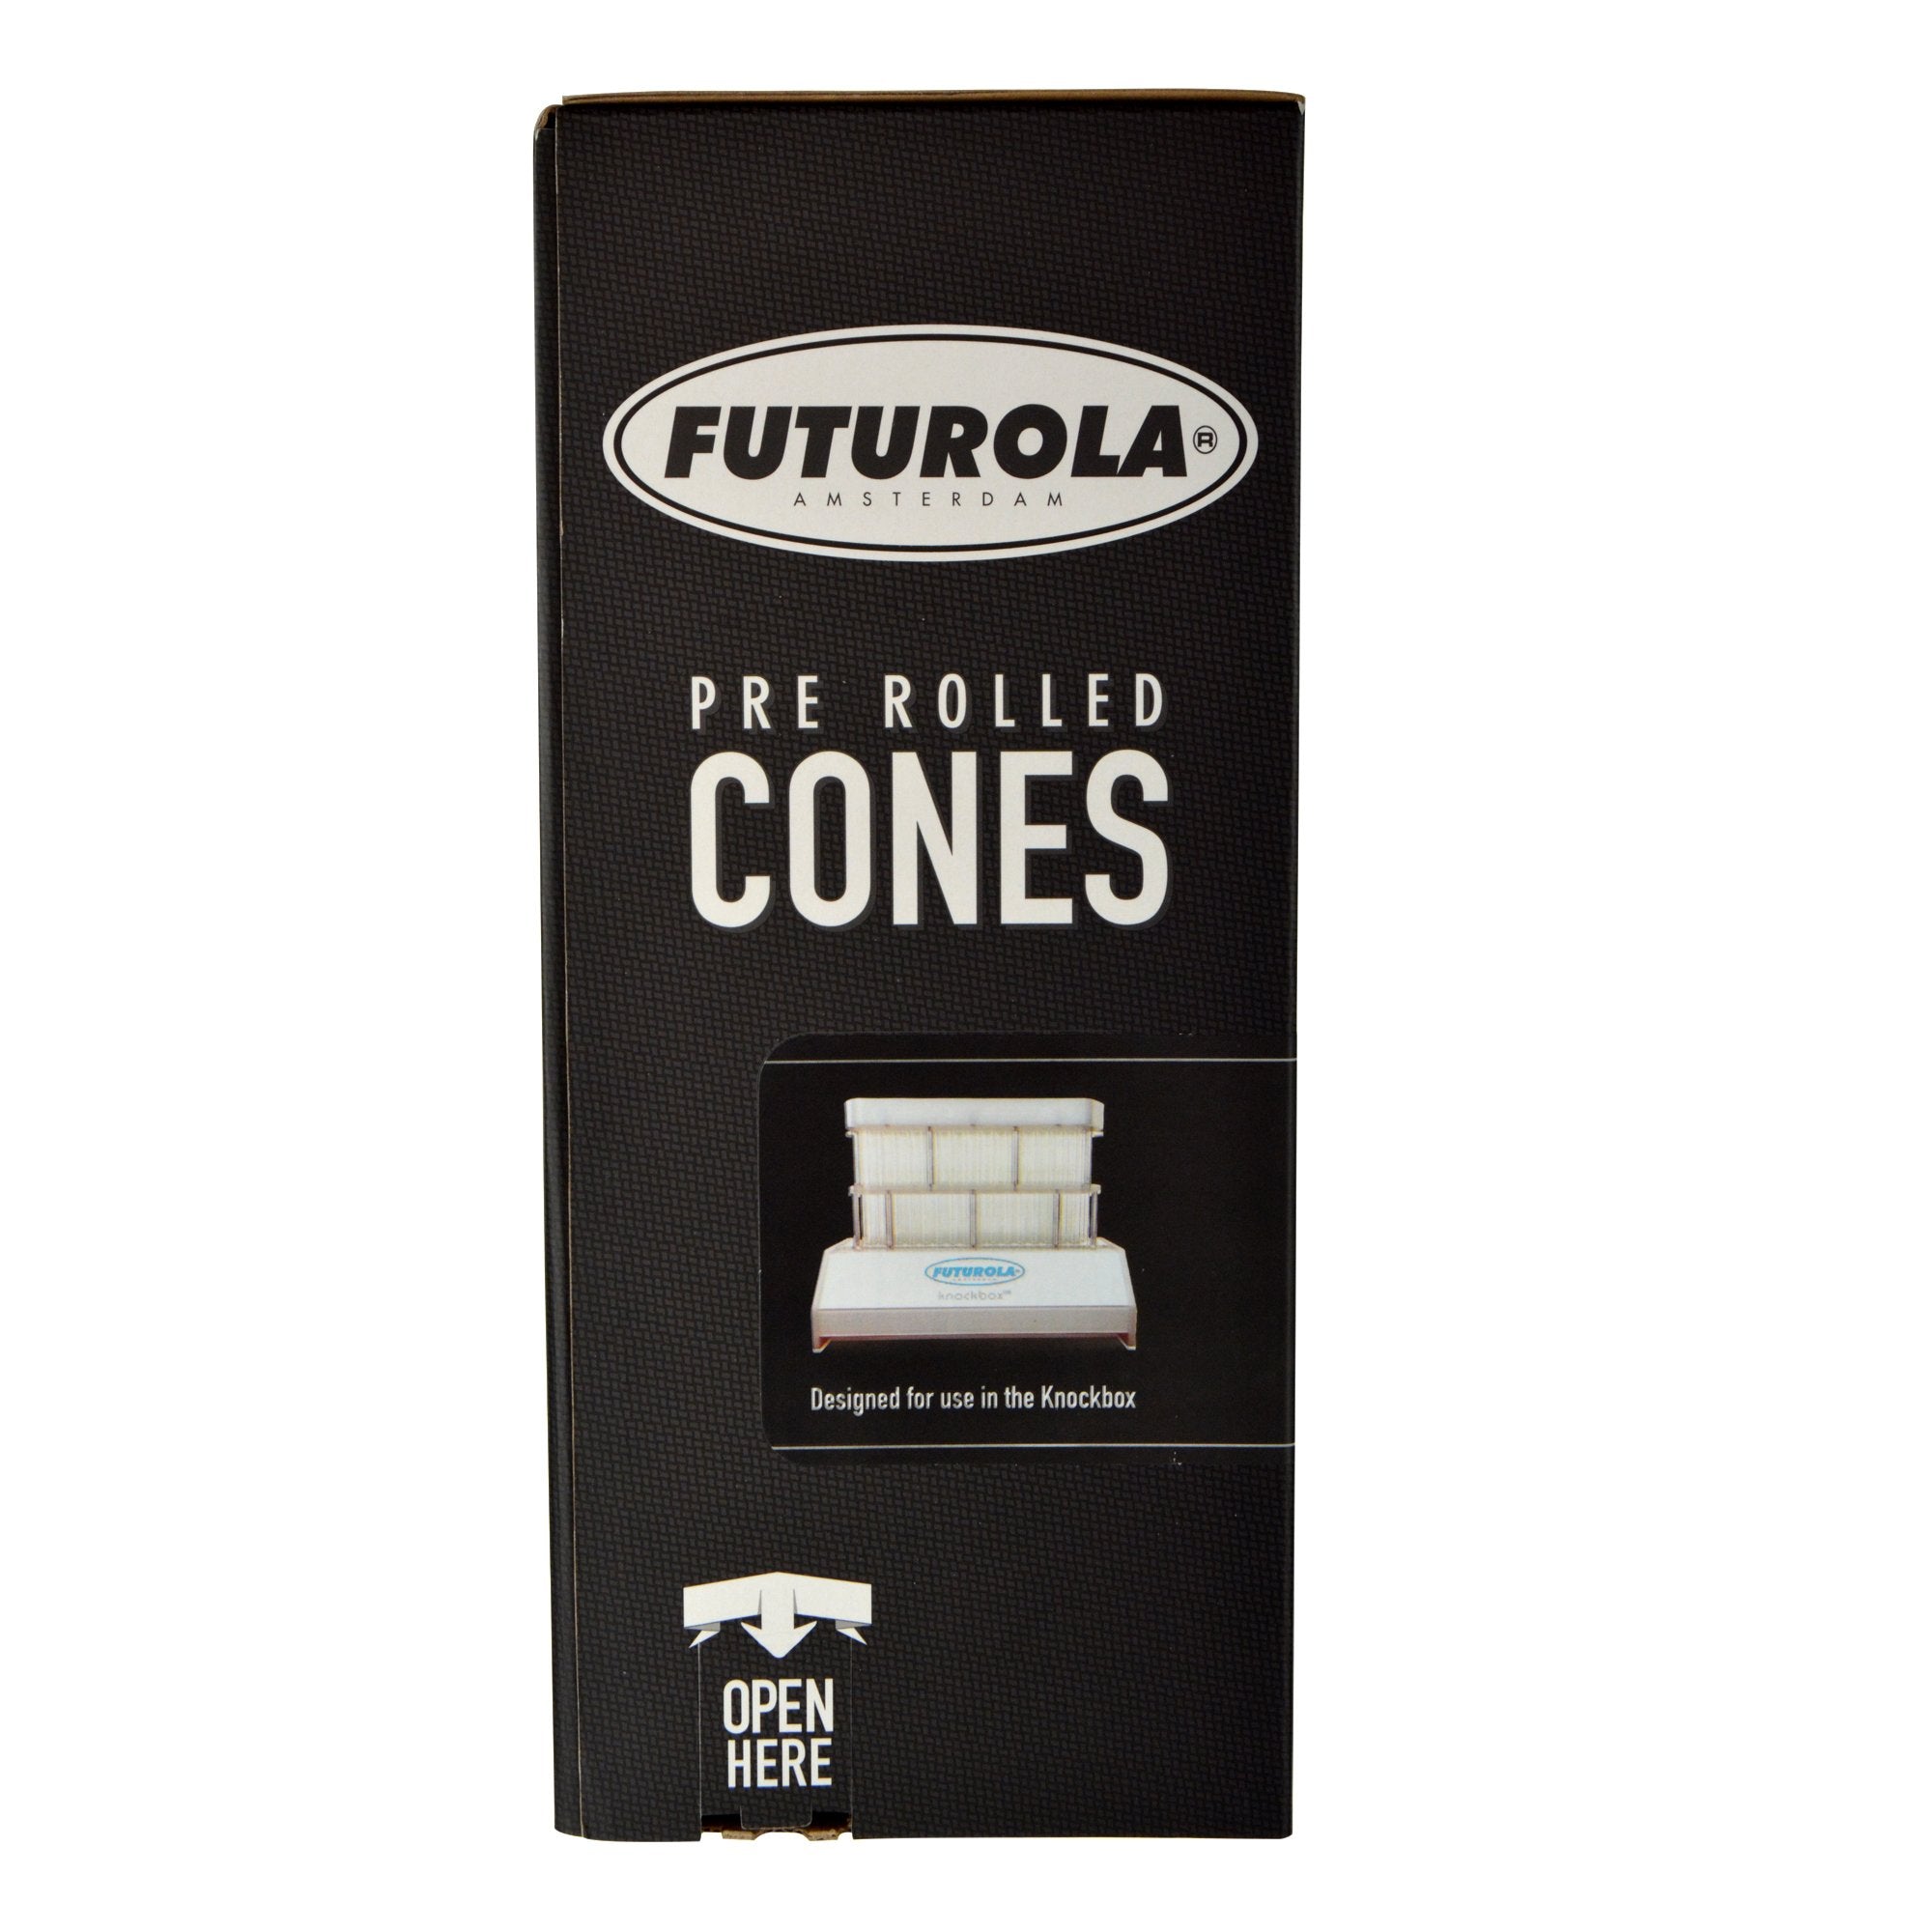 FUTUROLA | 1 1/4 Size Pre-Rolled Cones | 84mm - Classic White Paper - 900 Count - 2